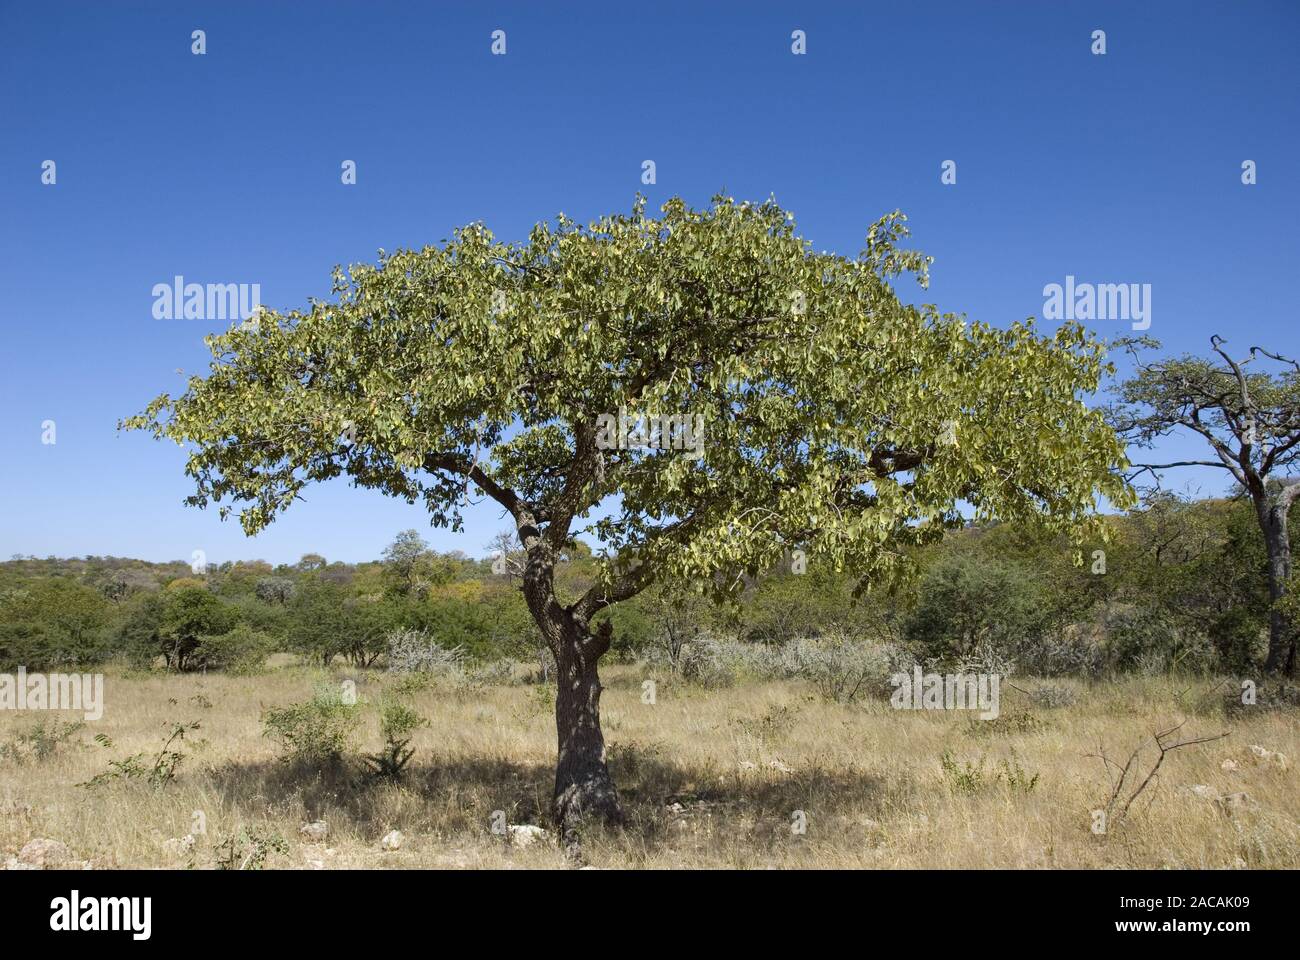 mopane tree Stock Photo